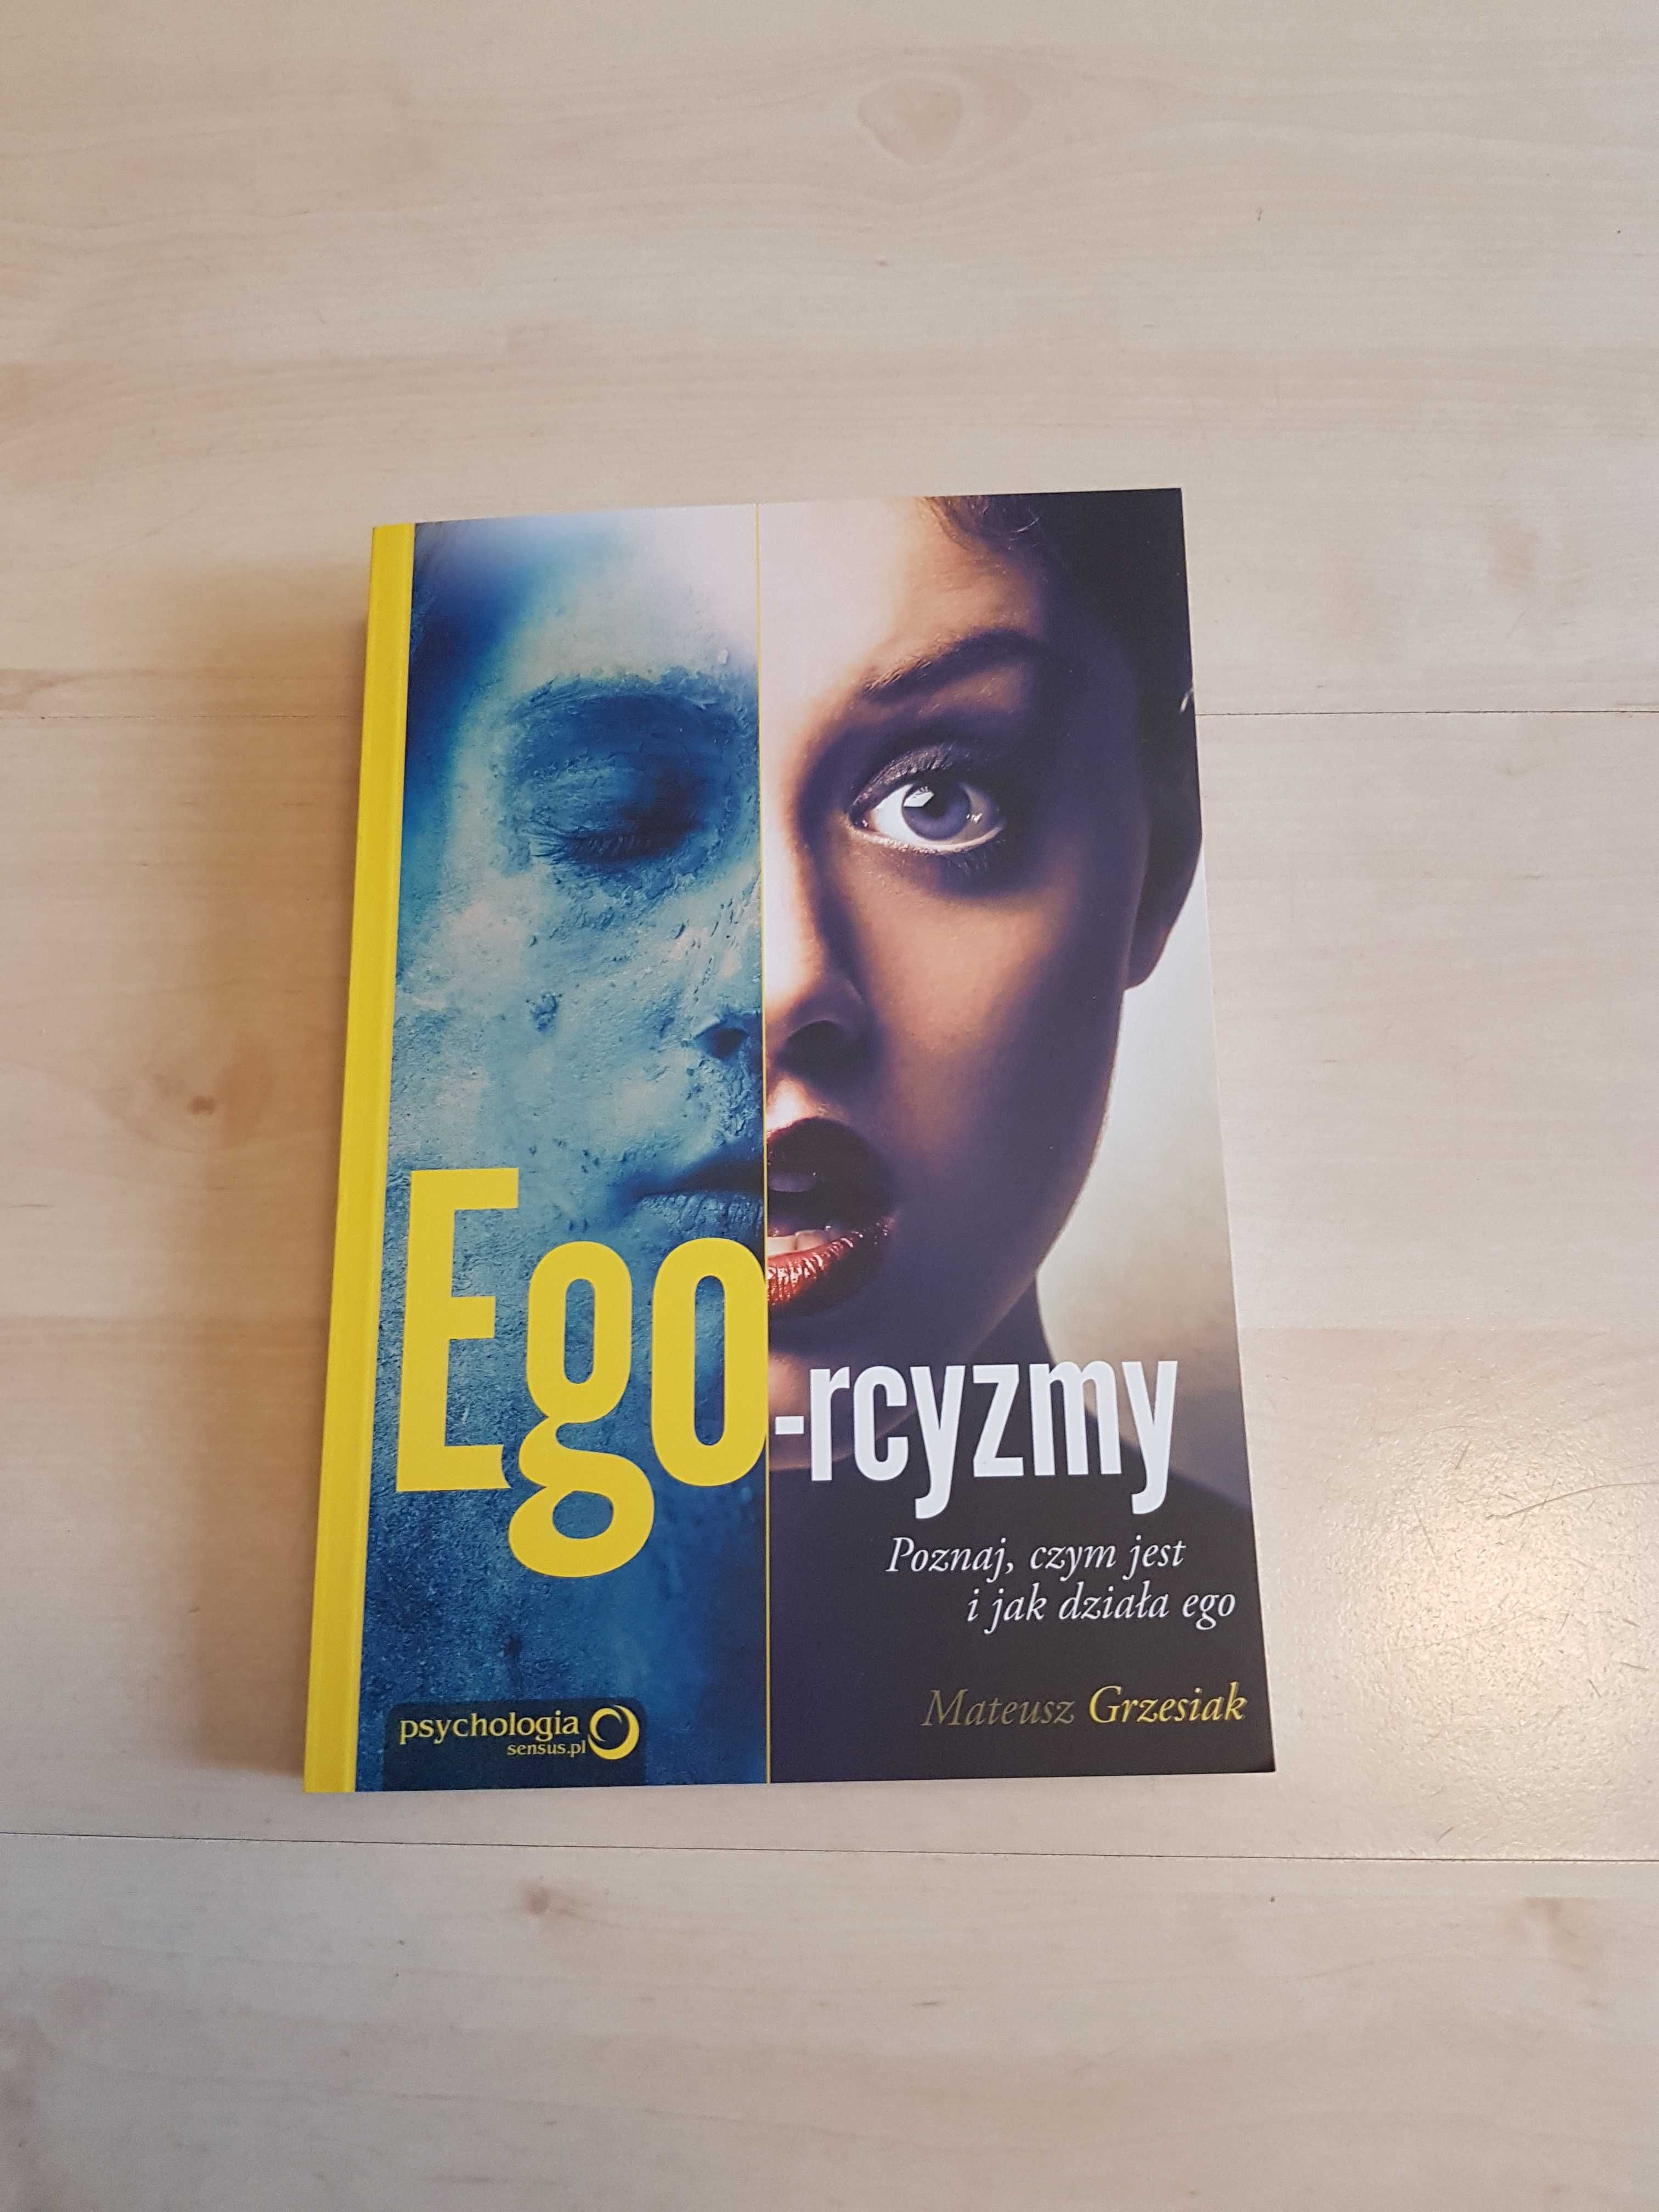 Ego-rcyzmy Mateusz Grzesiak, ksiażka